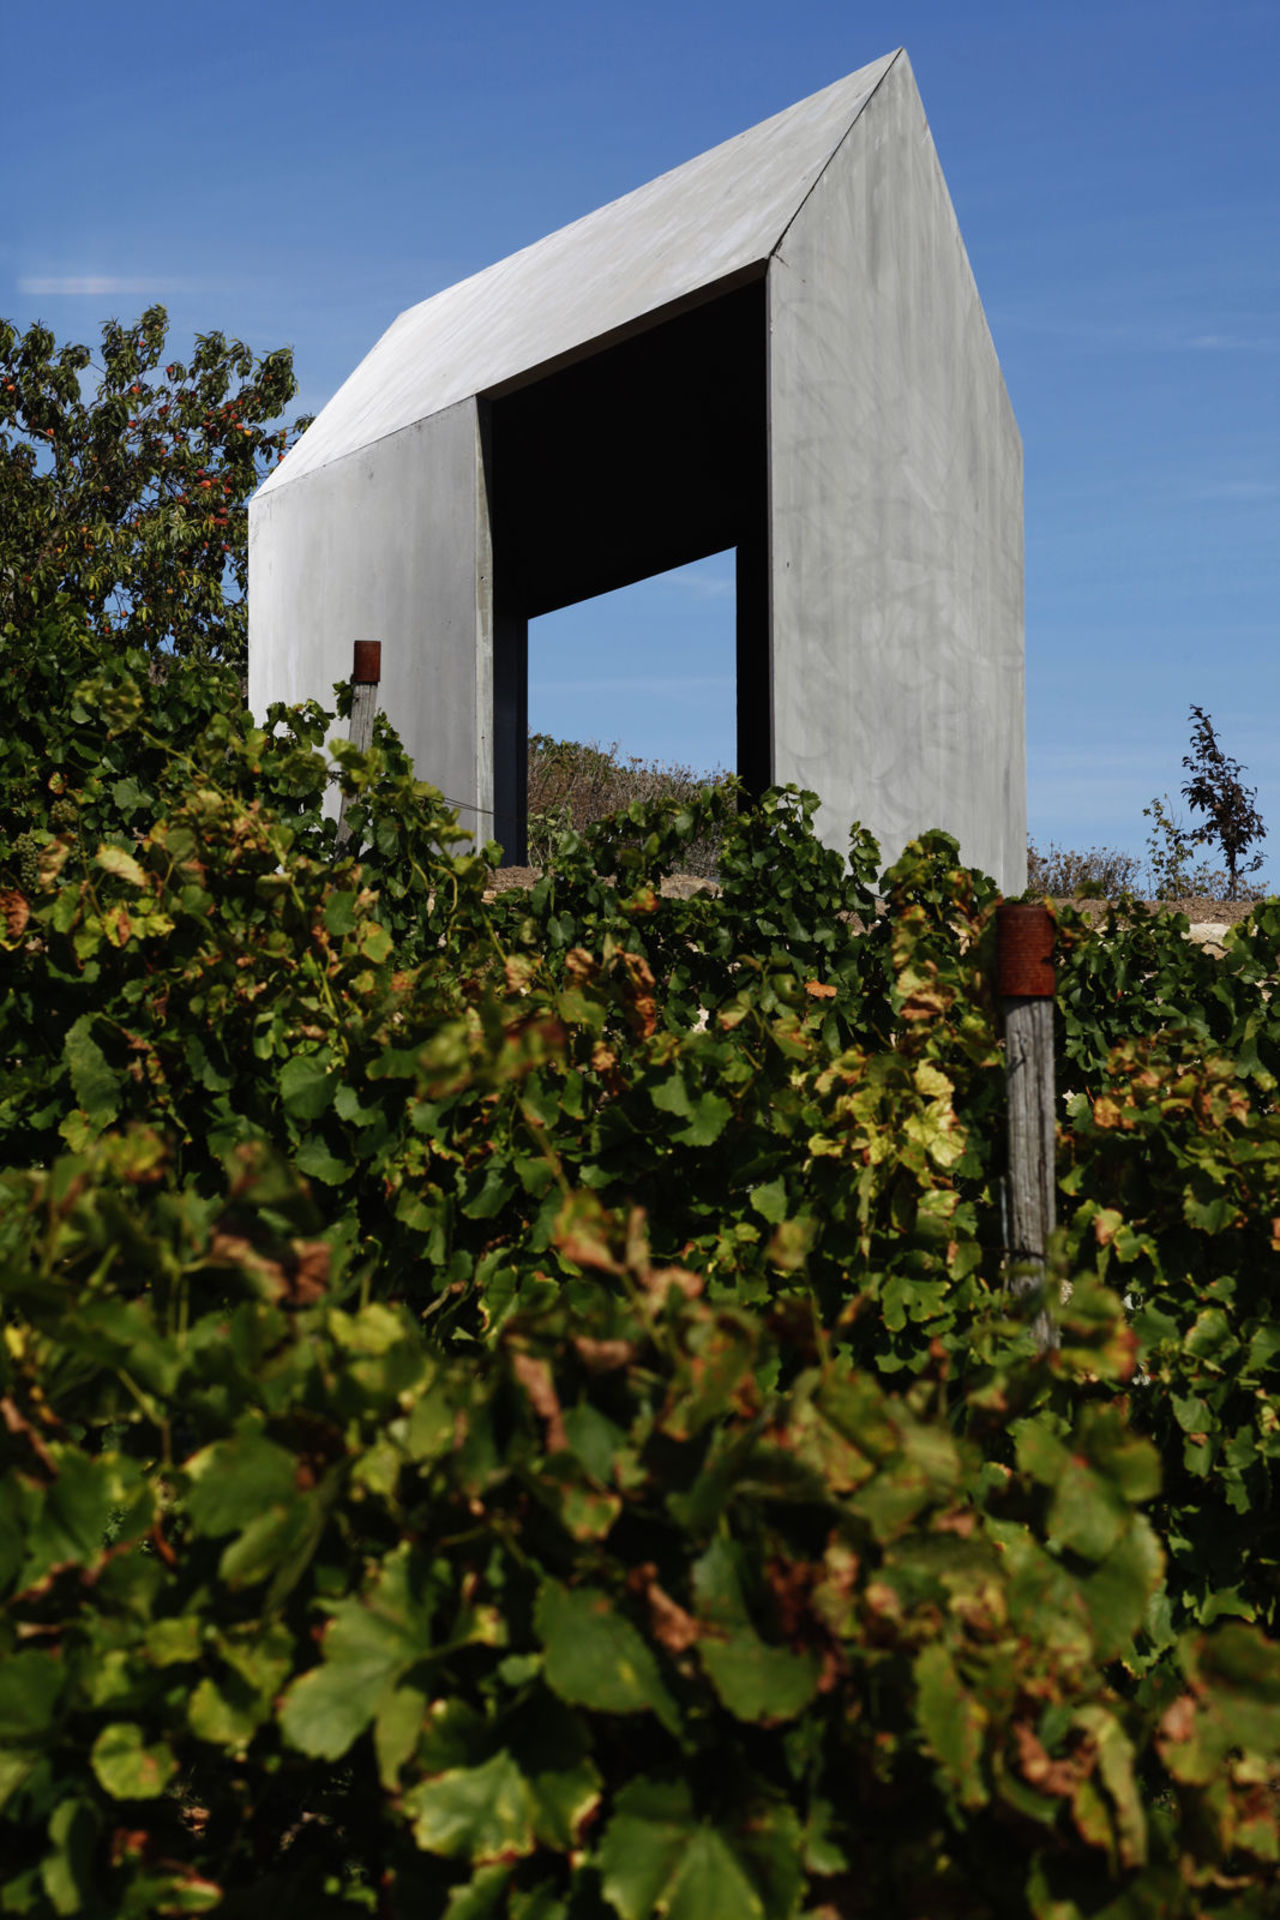 Foto: Blick auf das moderne Weinbergshaus aus Betonelementen, das sich an einem Hang zwischen Obstbäumen und Weinreben befindet.